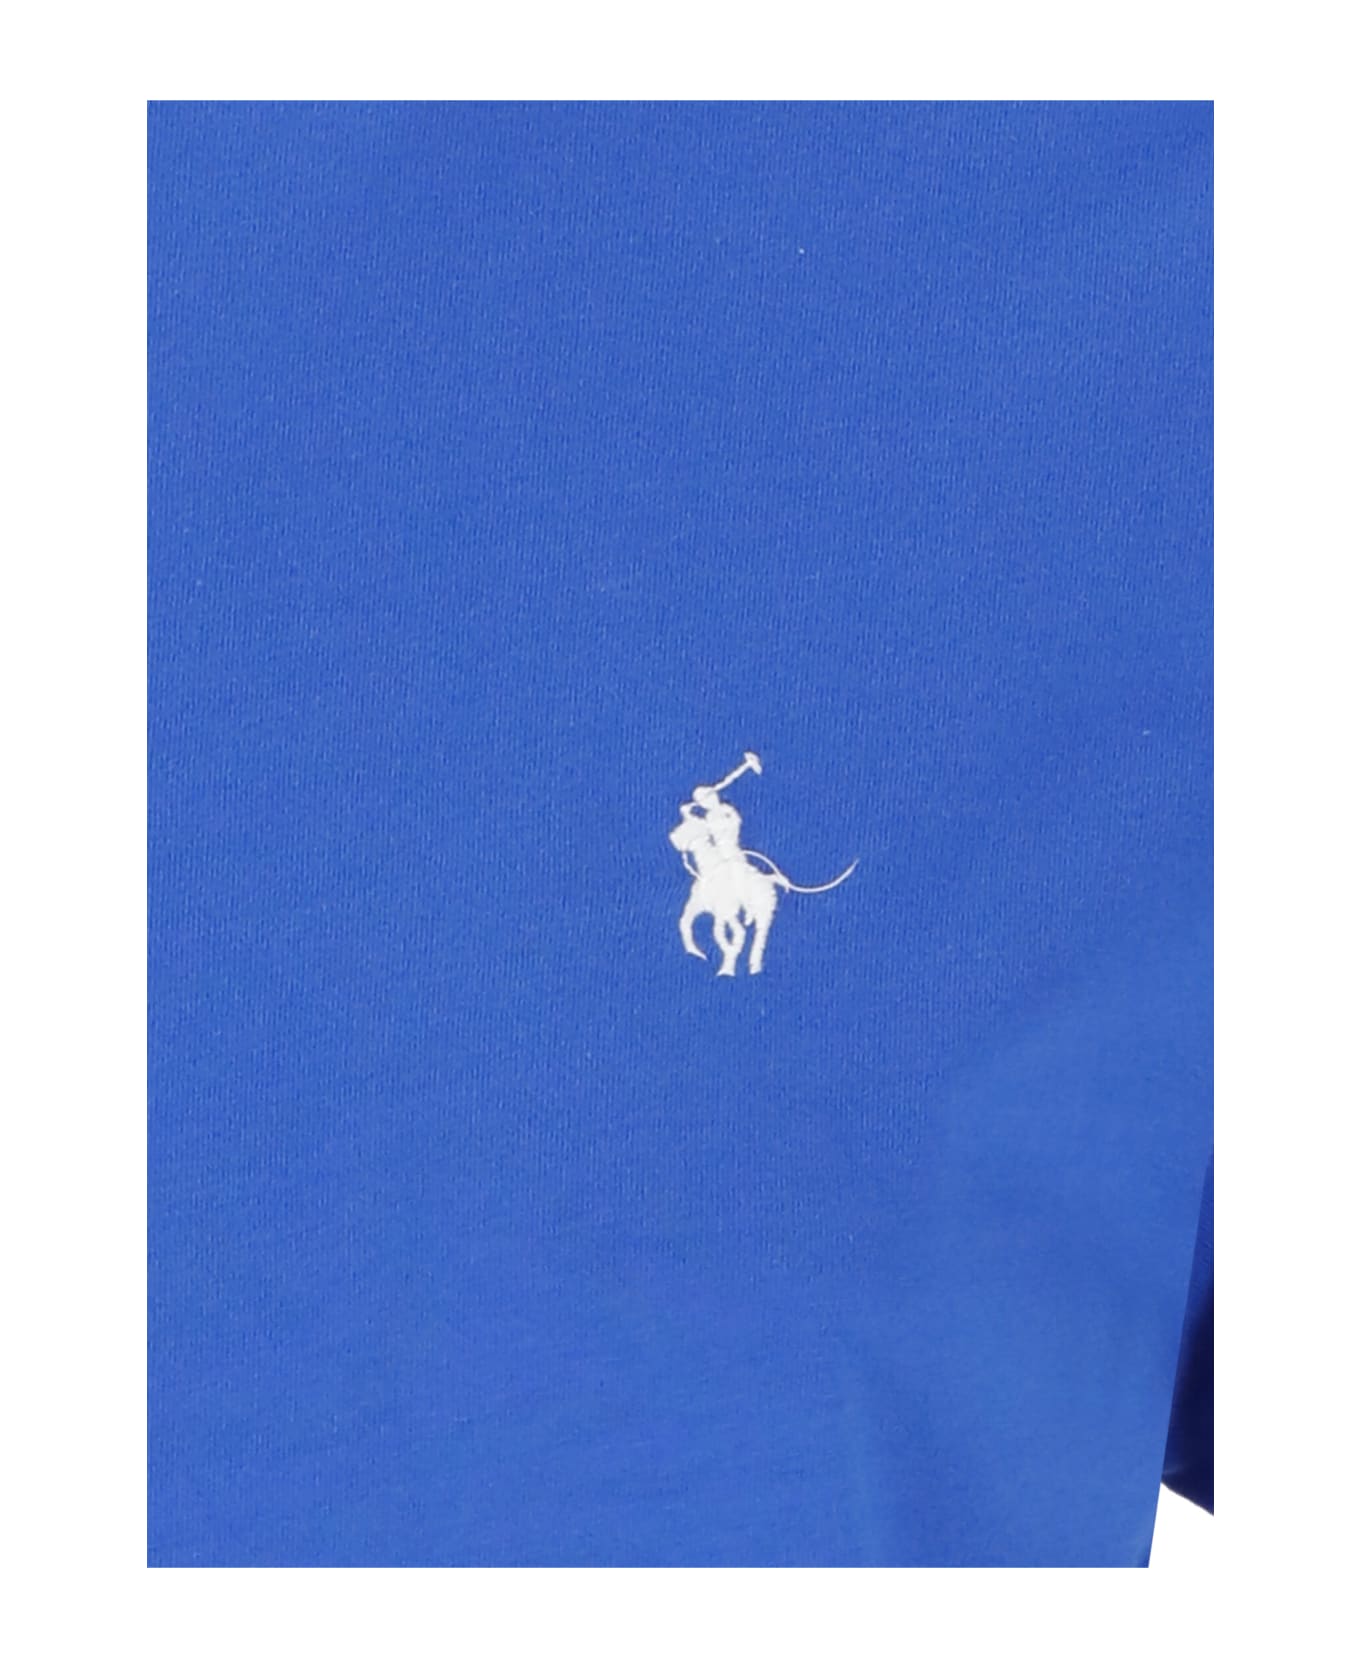 Ralph Lauren Pony T-shirt - Blue